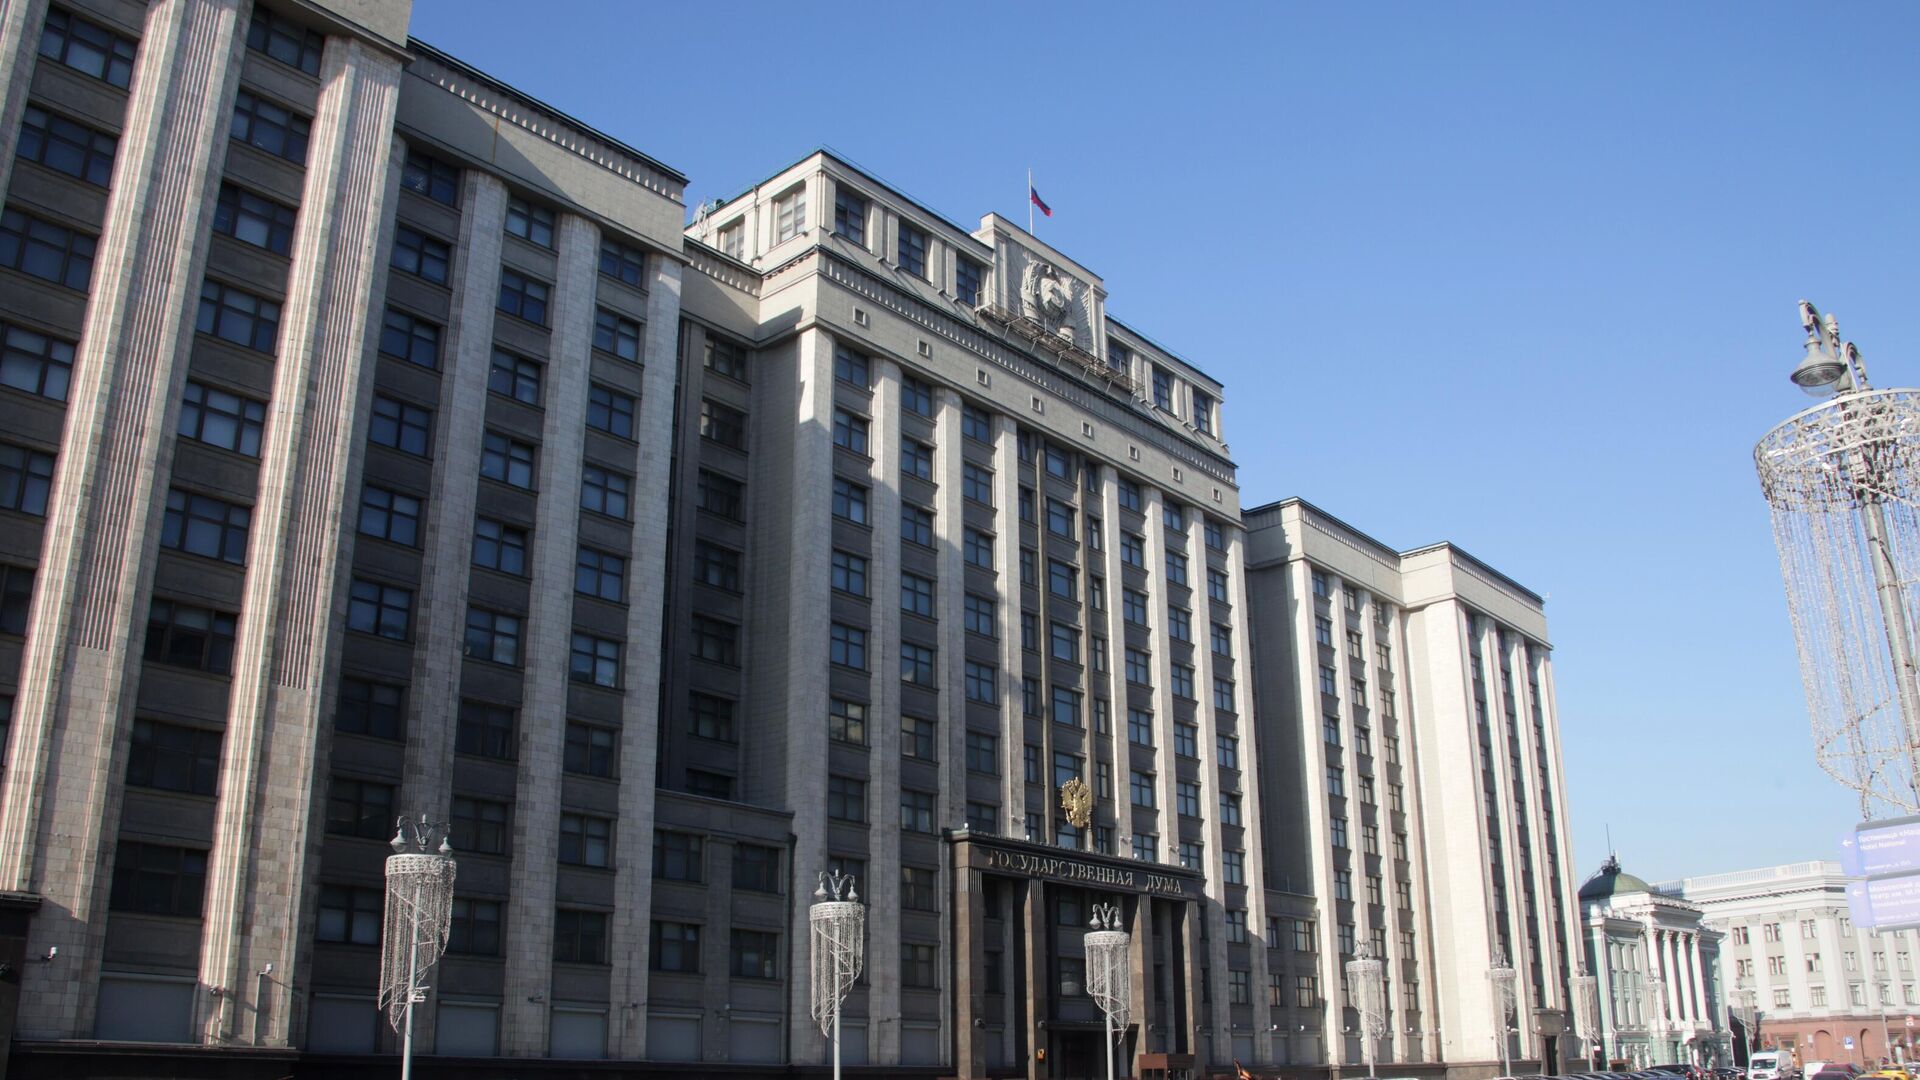 Дума приняла закон о расширении действия санкций за нарушение прав россиян